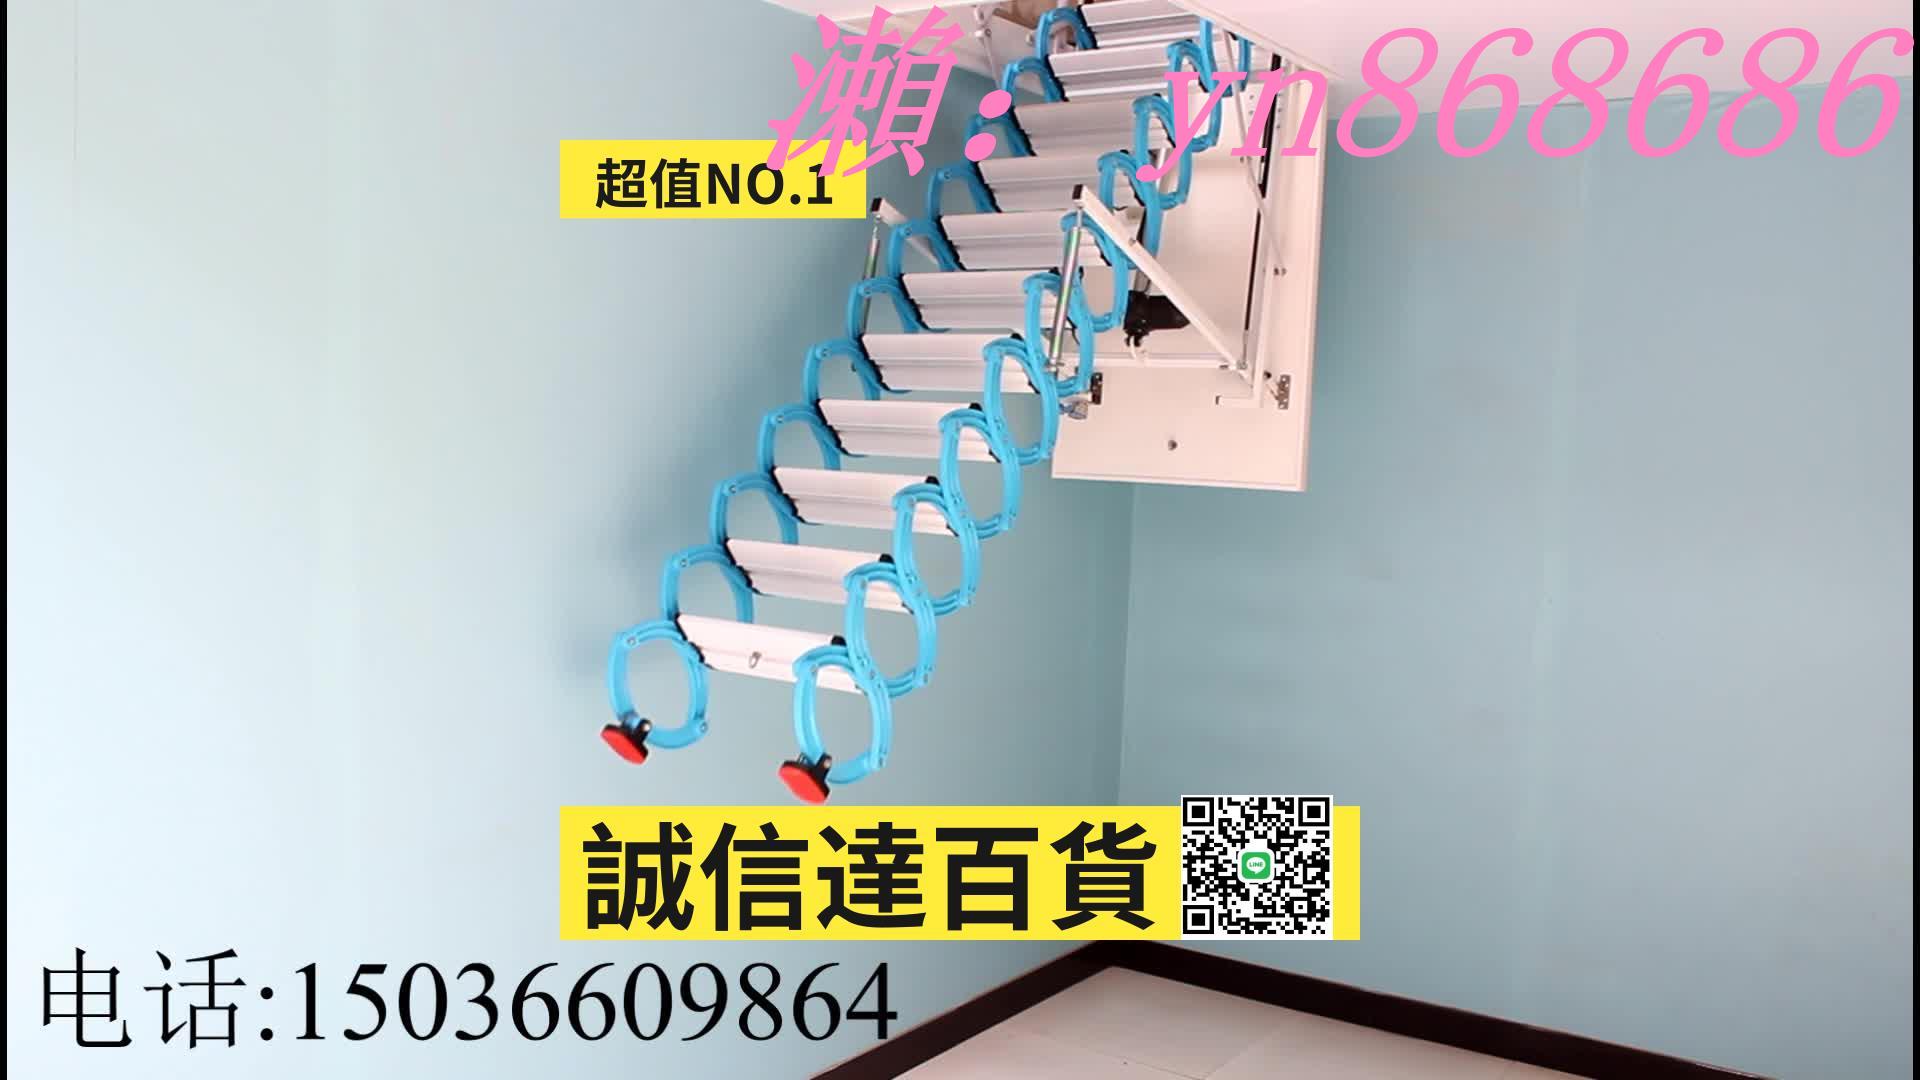 特價✅全自動閣樓伸縮樓梯家用隱形折疊升降樓梯安裝室內收縮拉伸梯